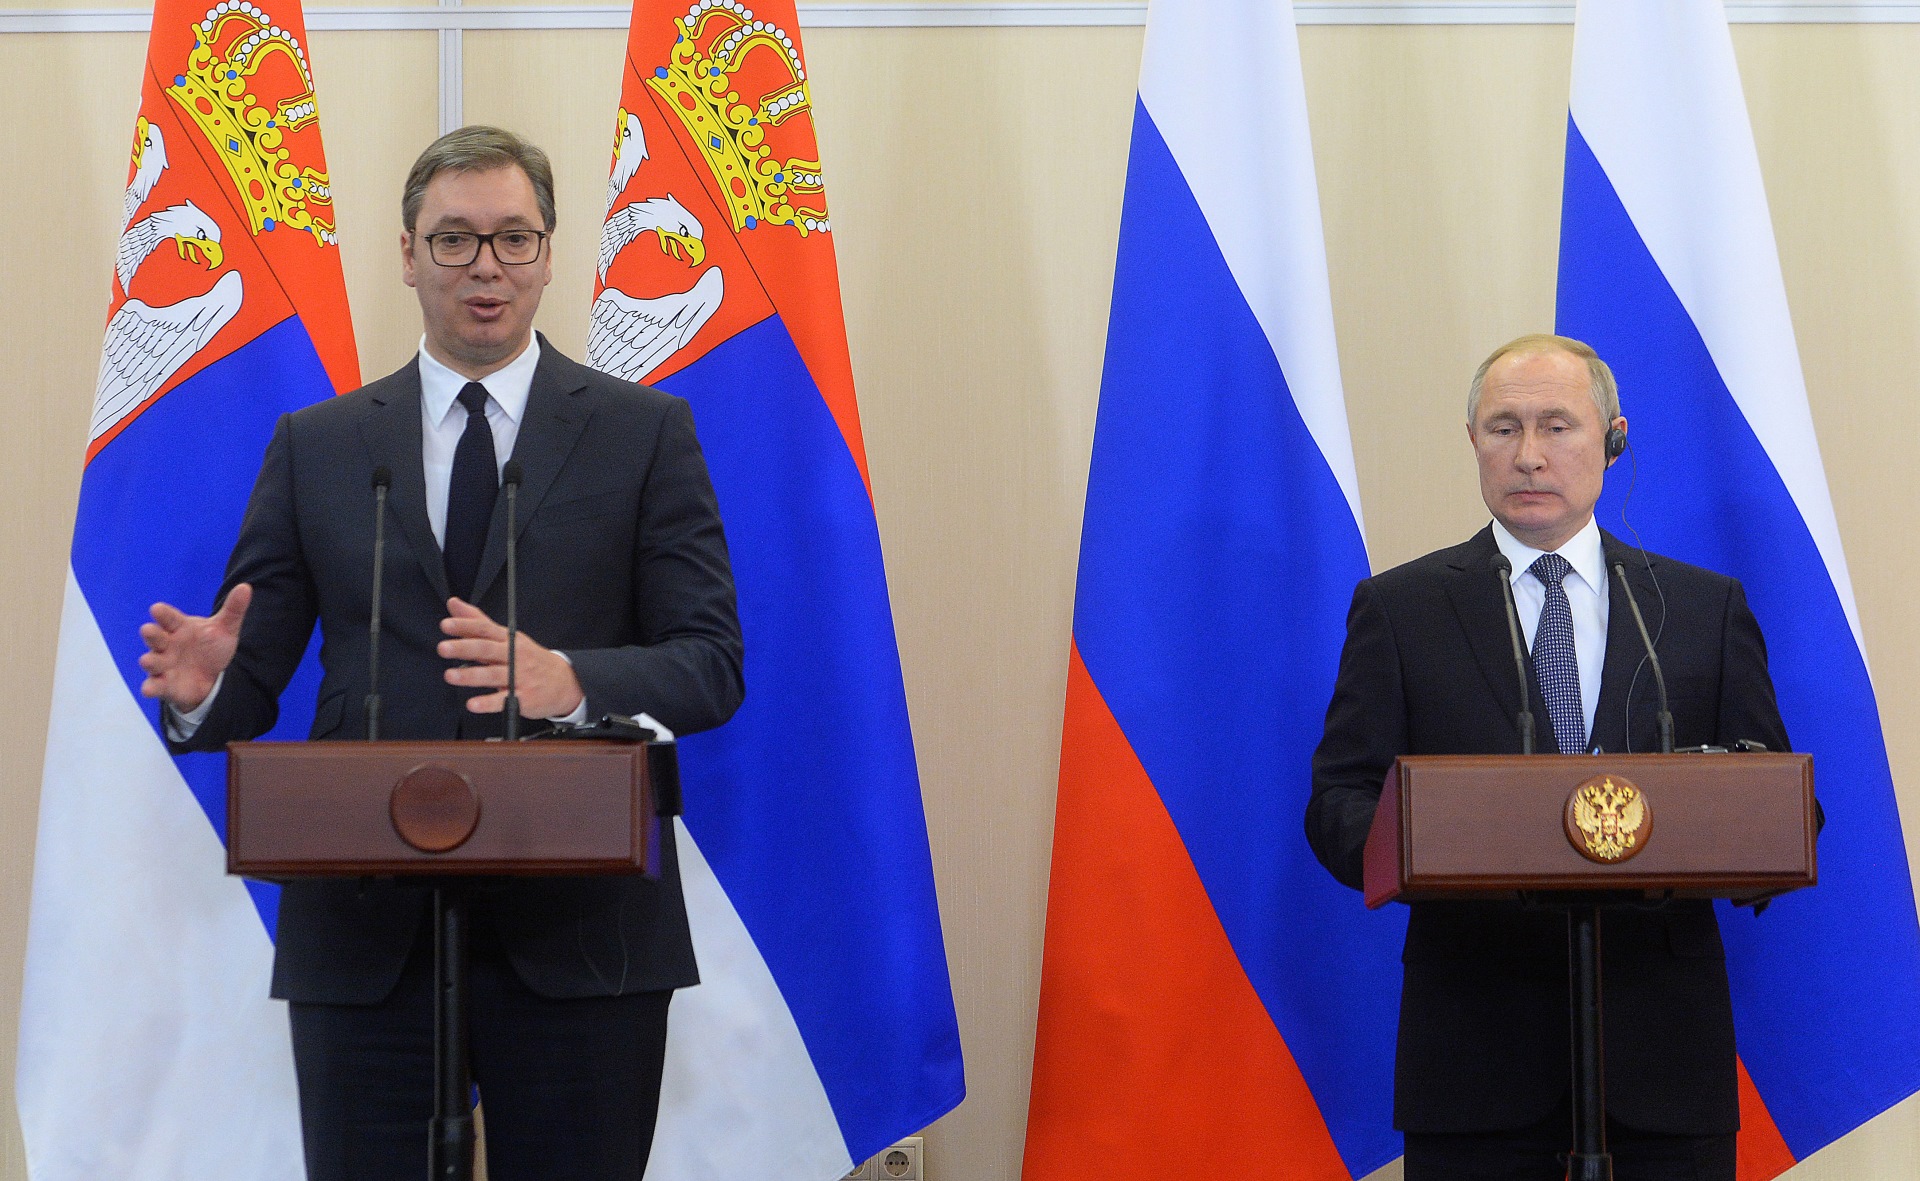 Vucic i Putin - zajednicka pres konferencija u Sociju 04.12.2019. godine